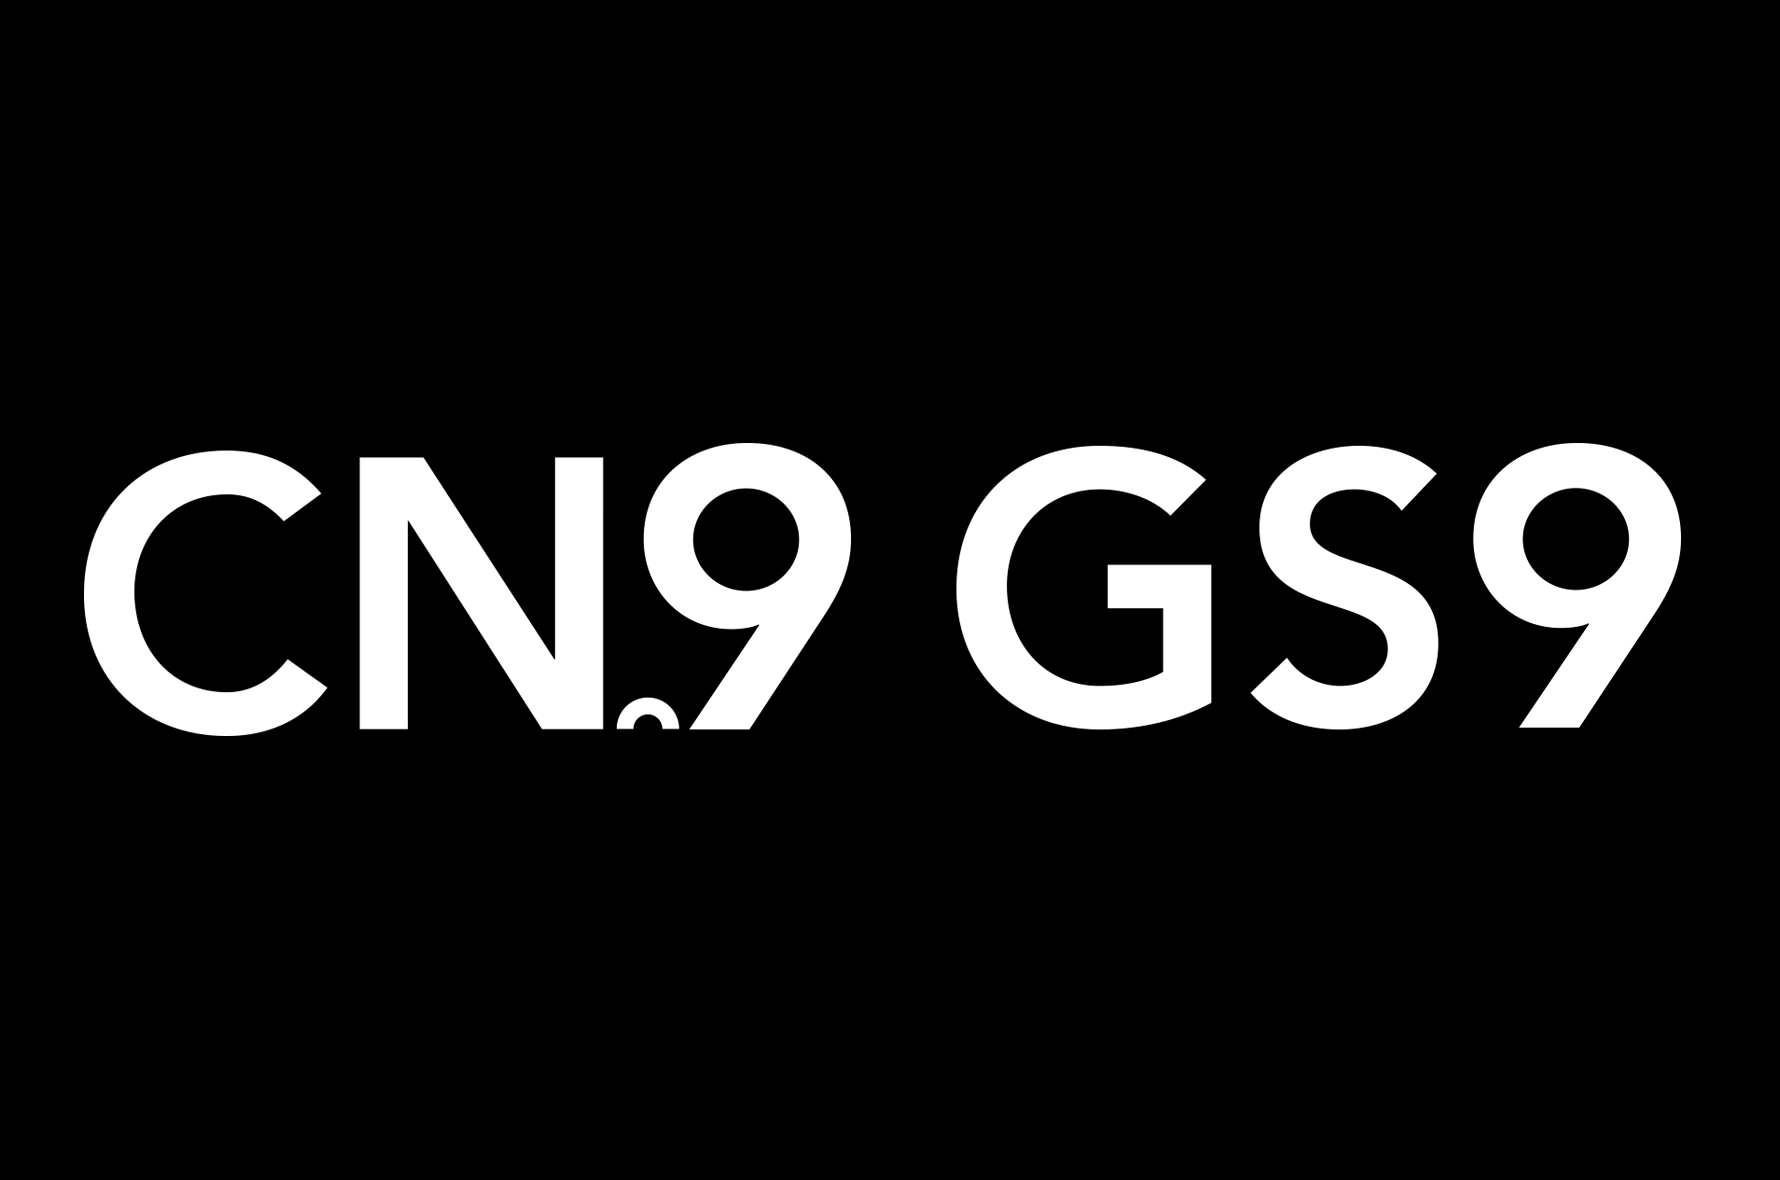 GS9